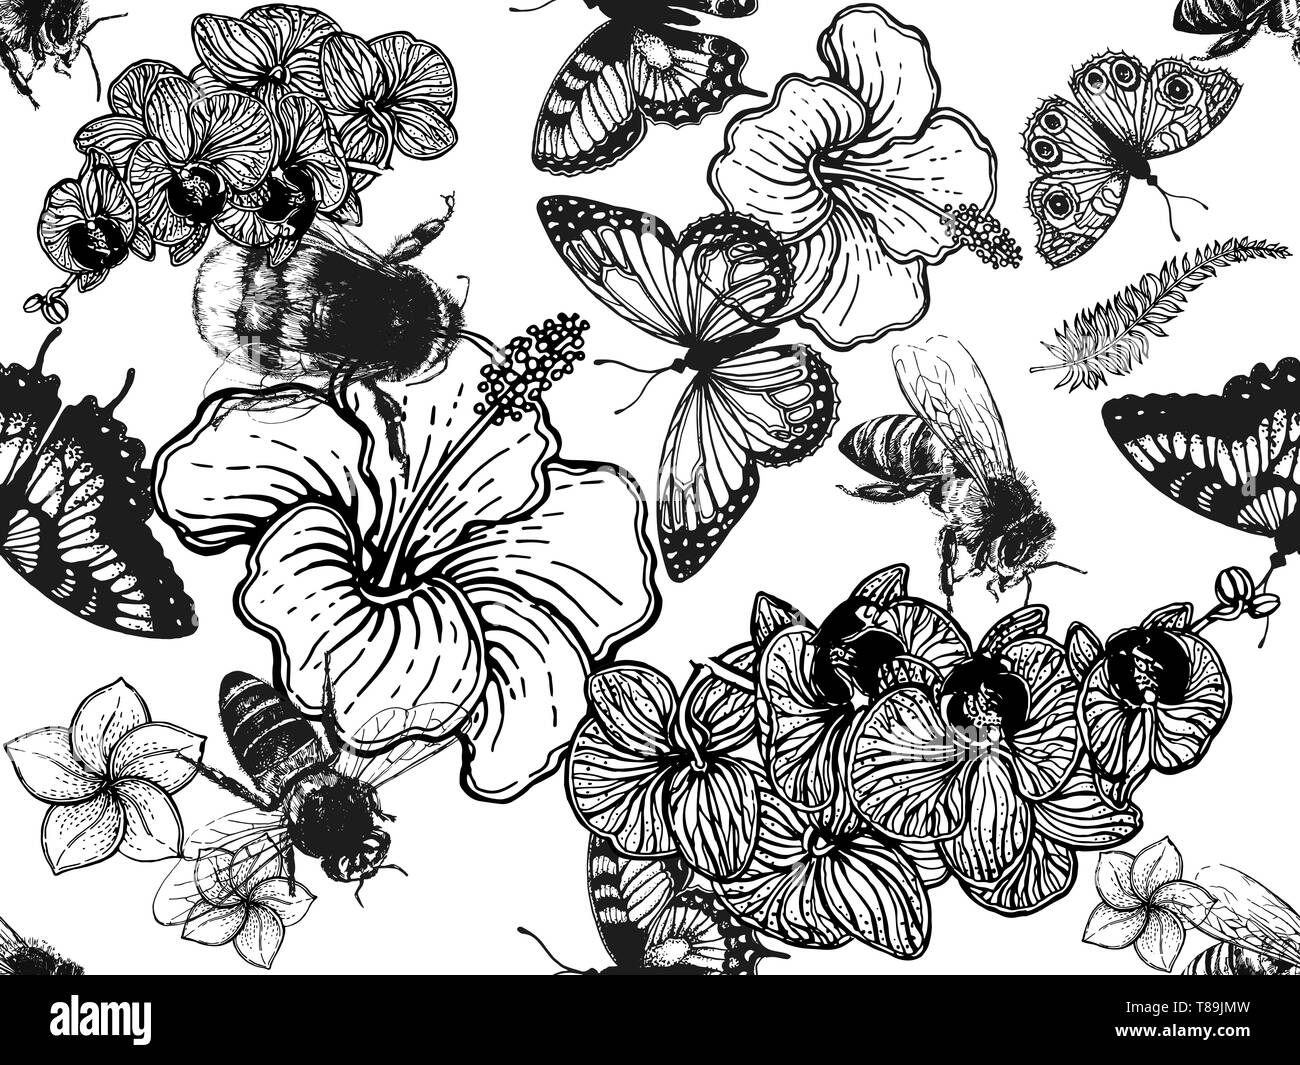 Nahtlose Muster von Hand gezeichnete Skizze stil Insekten und tropischen Blumen auf weißem Hintergrund. Vector Illustration. Stock Vektor